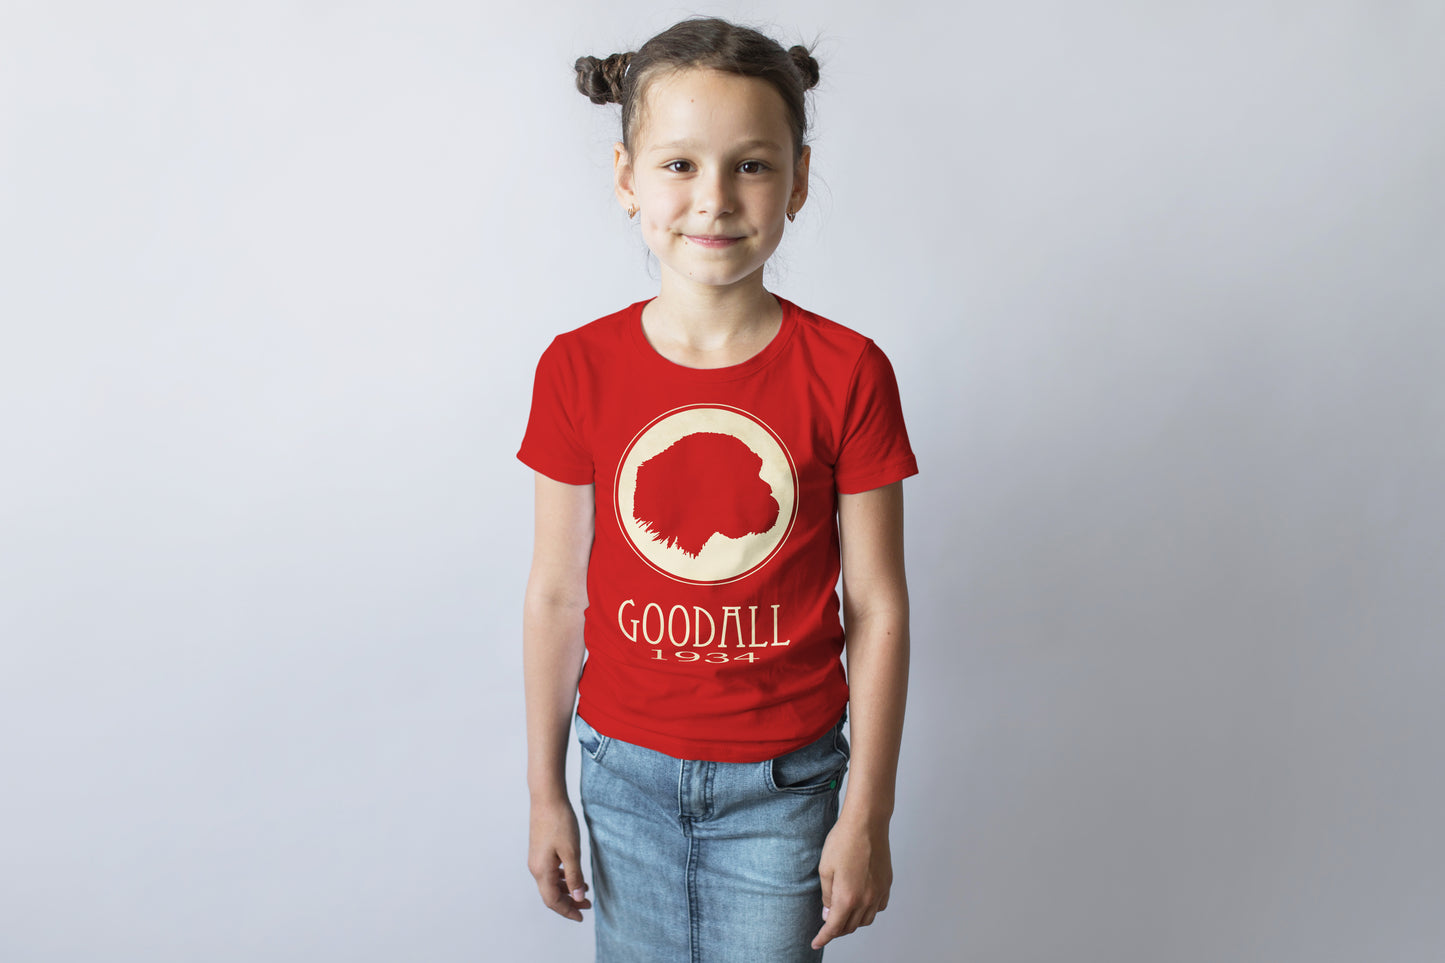 Goodall Zoology T-shirt, Jane Goodall Chimpanzee